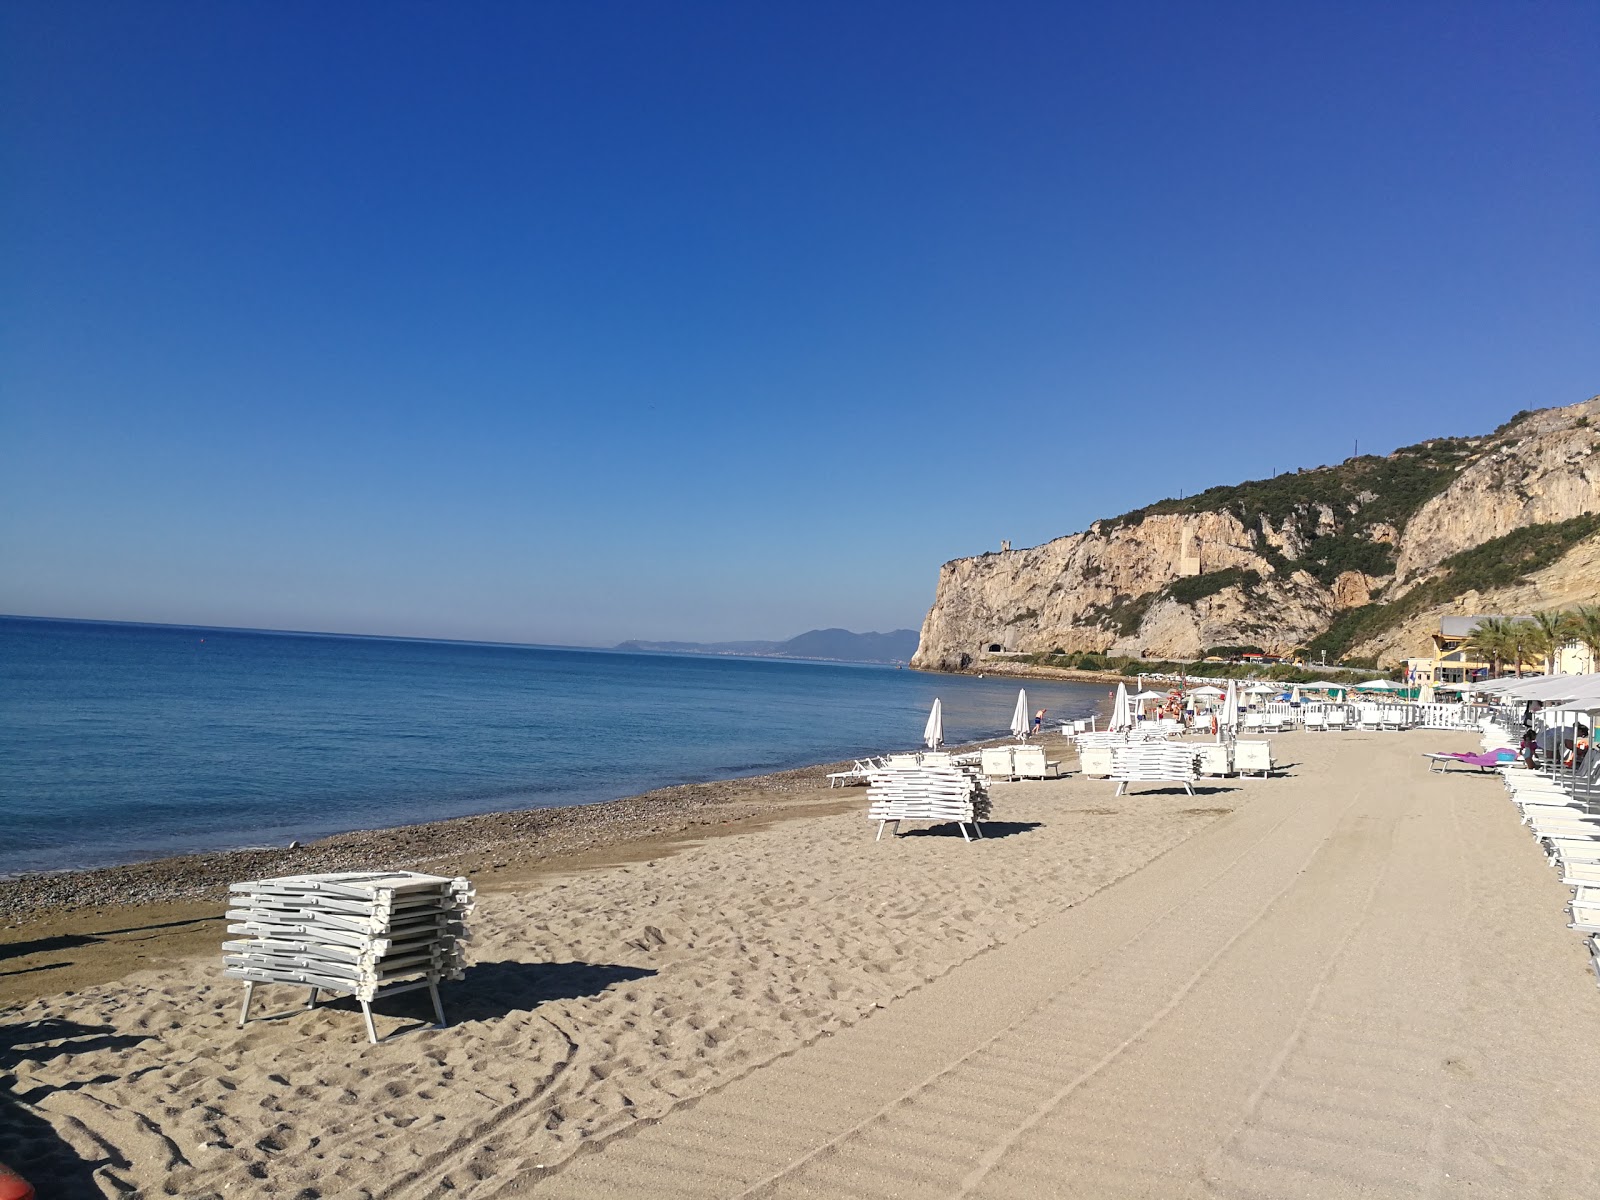 Foto af Spiaggia libera Attrezzata strandferiestedet område